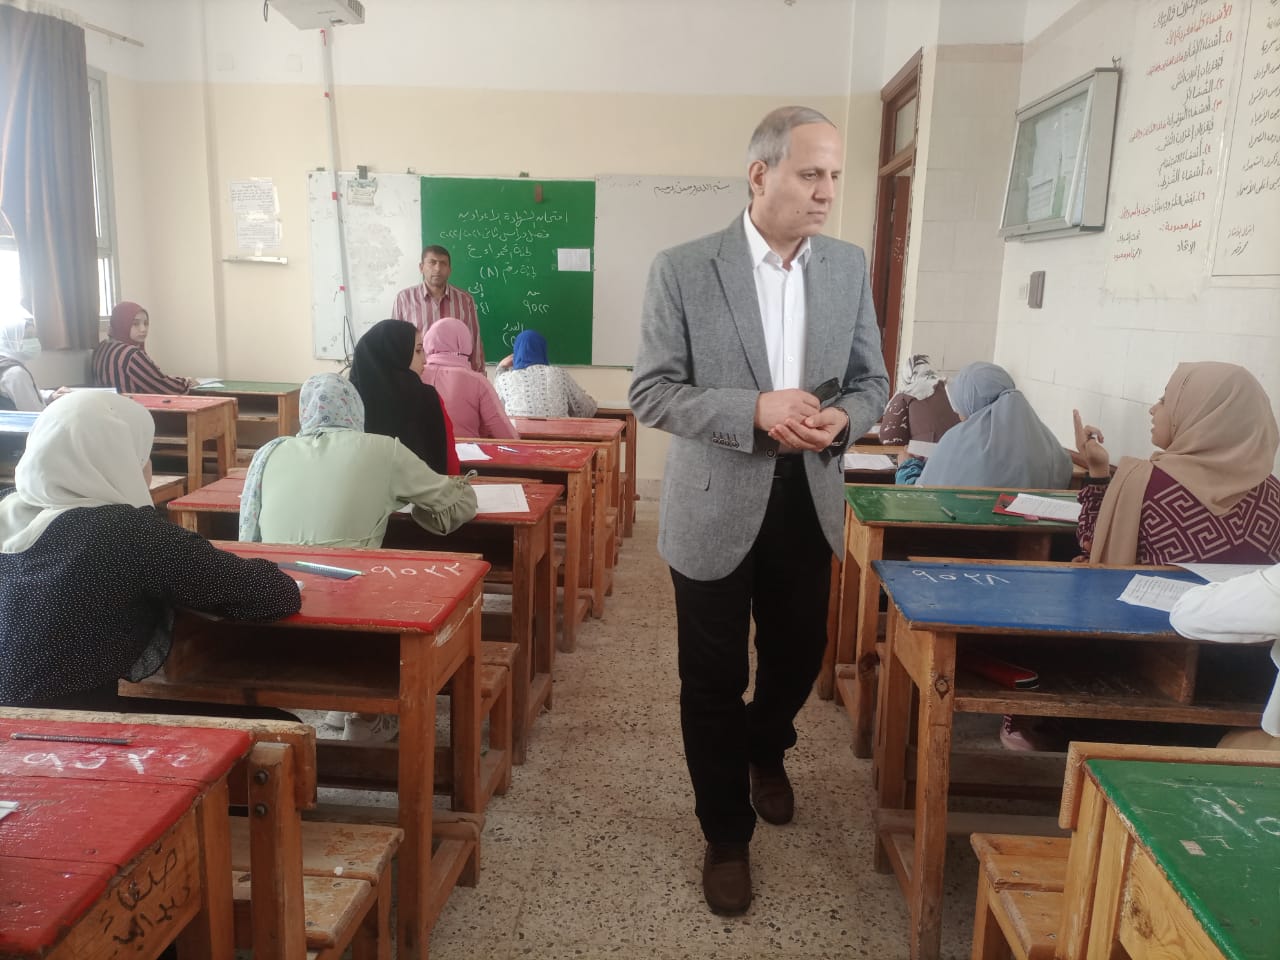 غياب 472 طالب وطالبة عن أداء امتحانات الشهادة الإعدادية بكفر الشيخ وغرف العمليات لم ترصد شكاوى